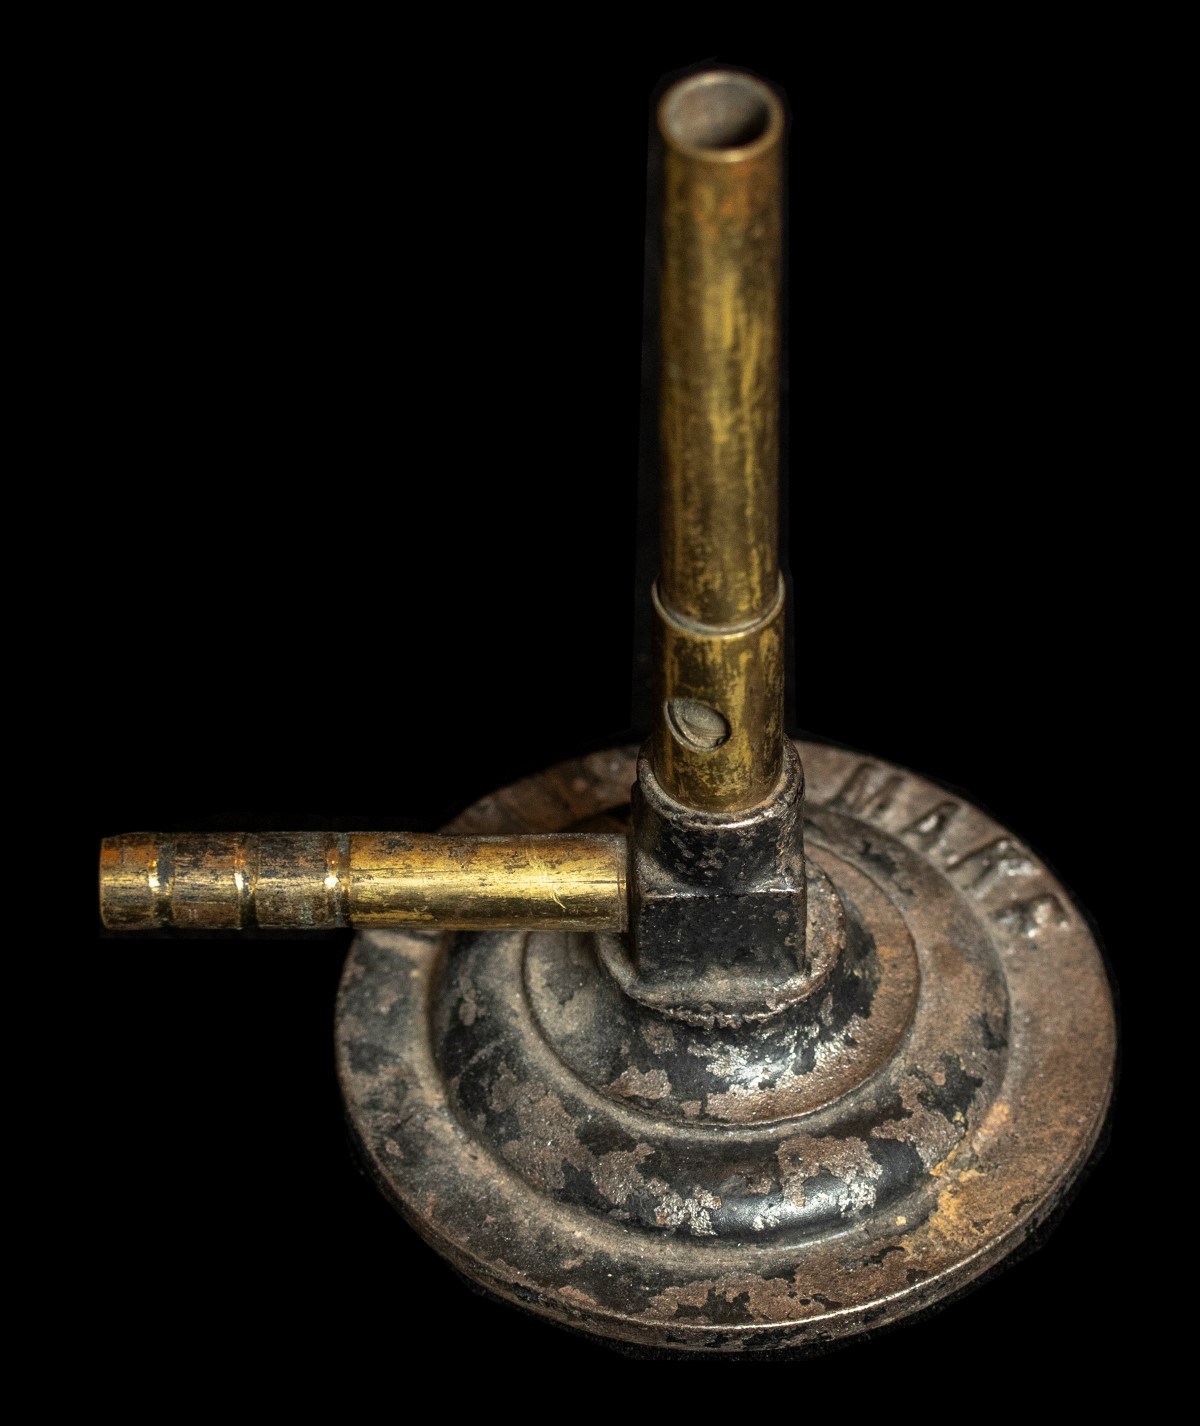 A worn metal Bunsen burner